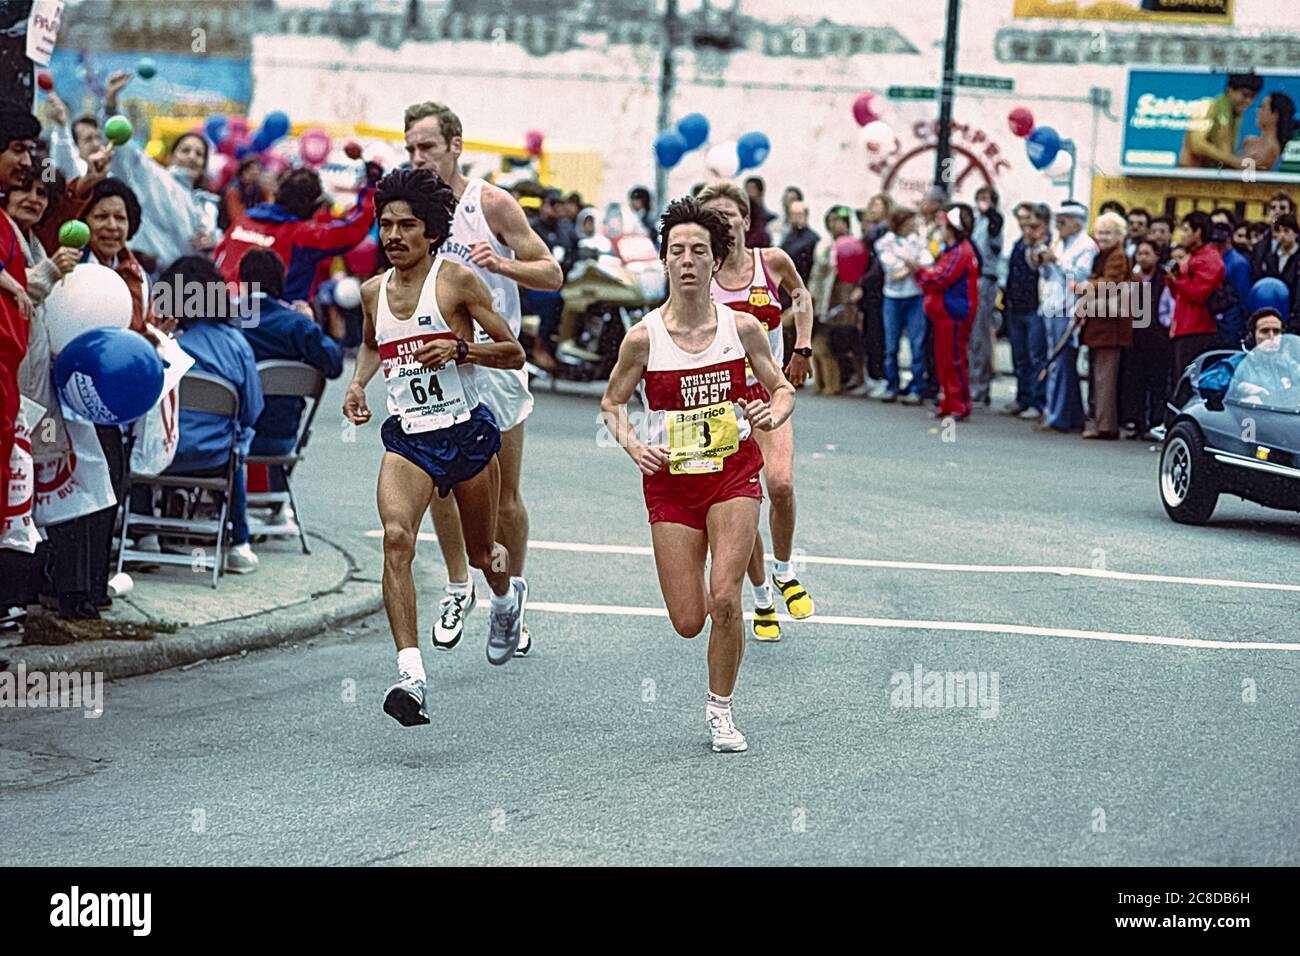 Joan Benoit (USA) ganador #3 compitiendo en el Maratón de Chicago 1985 Foto de stock